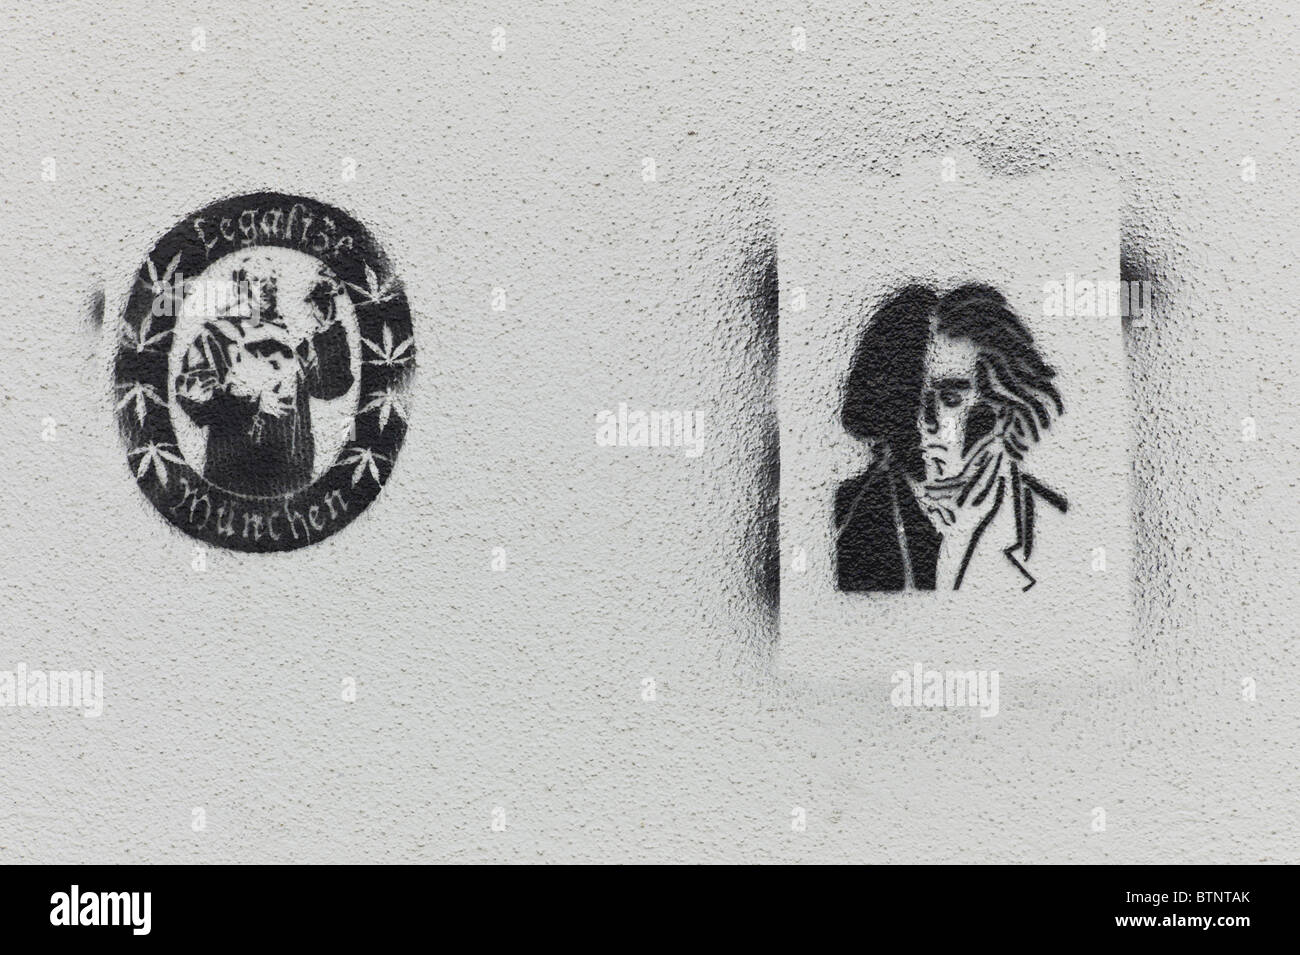 Stencil / Graffiti che mostra un monaco Fanciscaner insieme con le parole di legalizzare & Monaco di Baviera e un ritratto di Beethoven su una parete Foto Stock